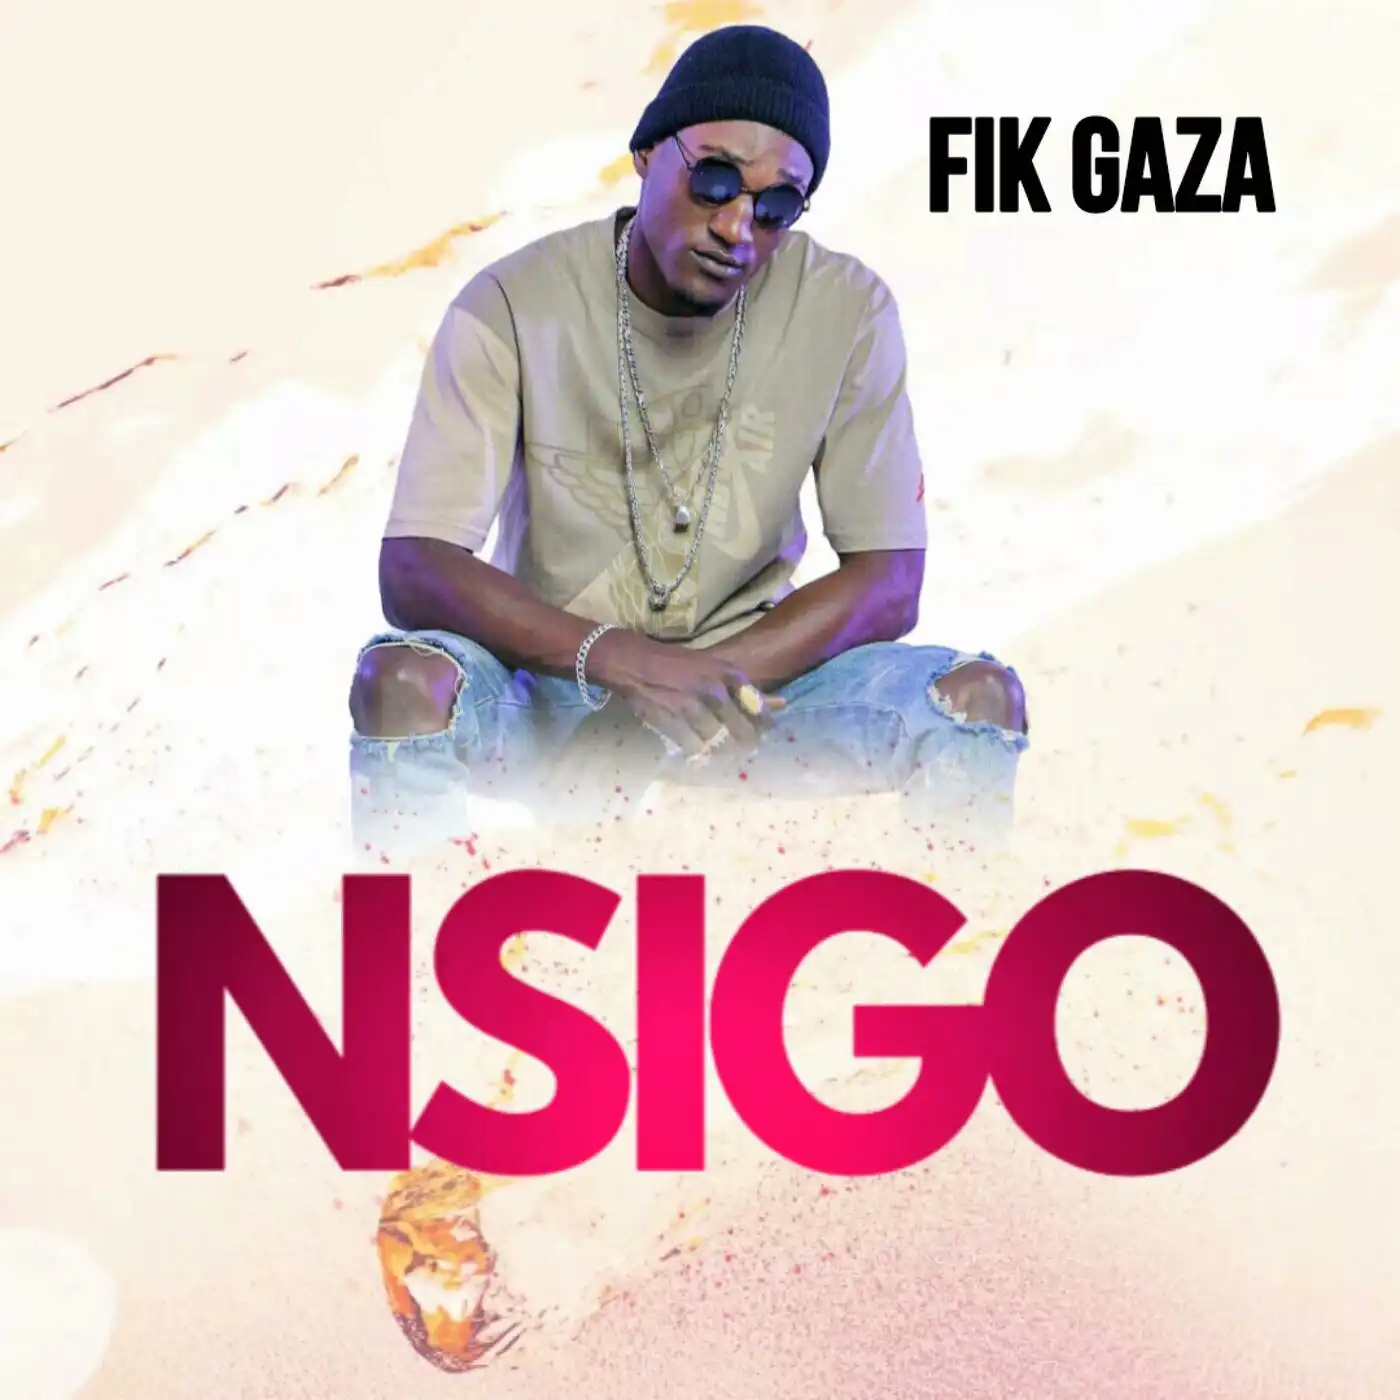 fik-gaza-nsigo-album-cover